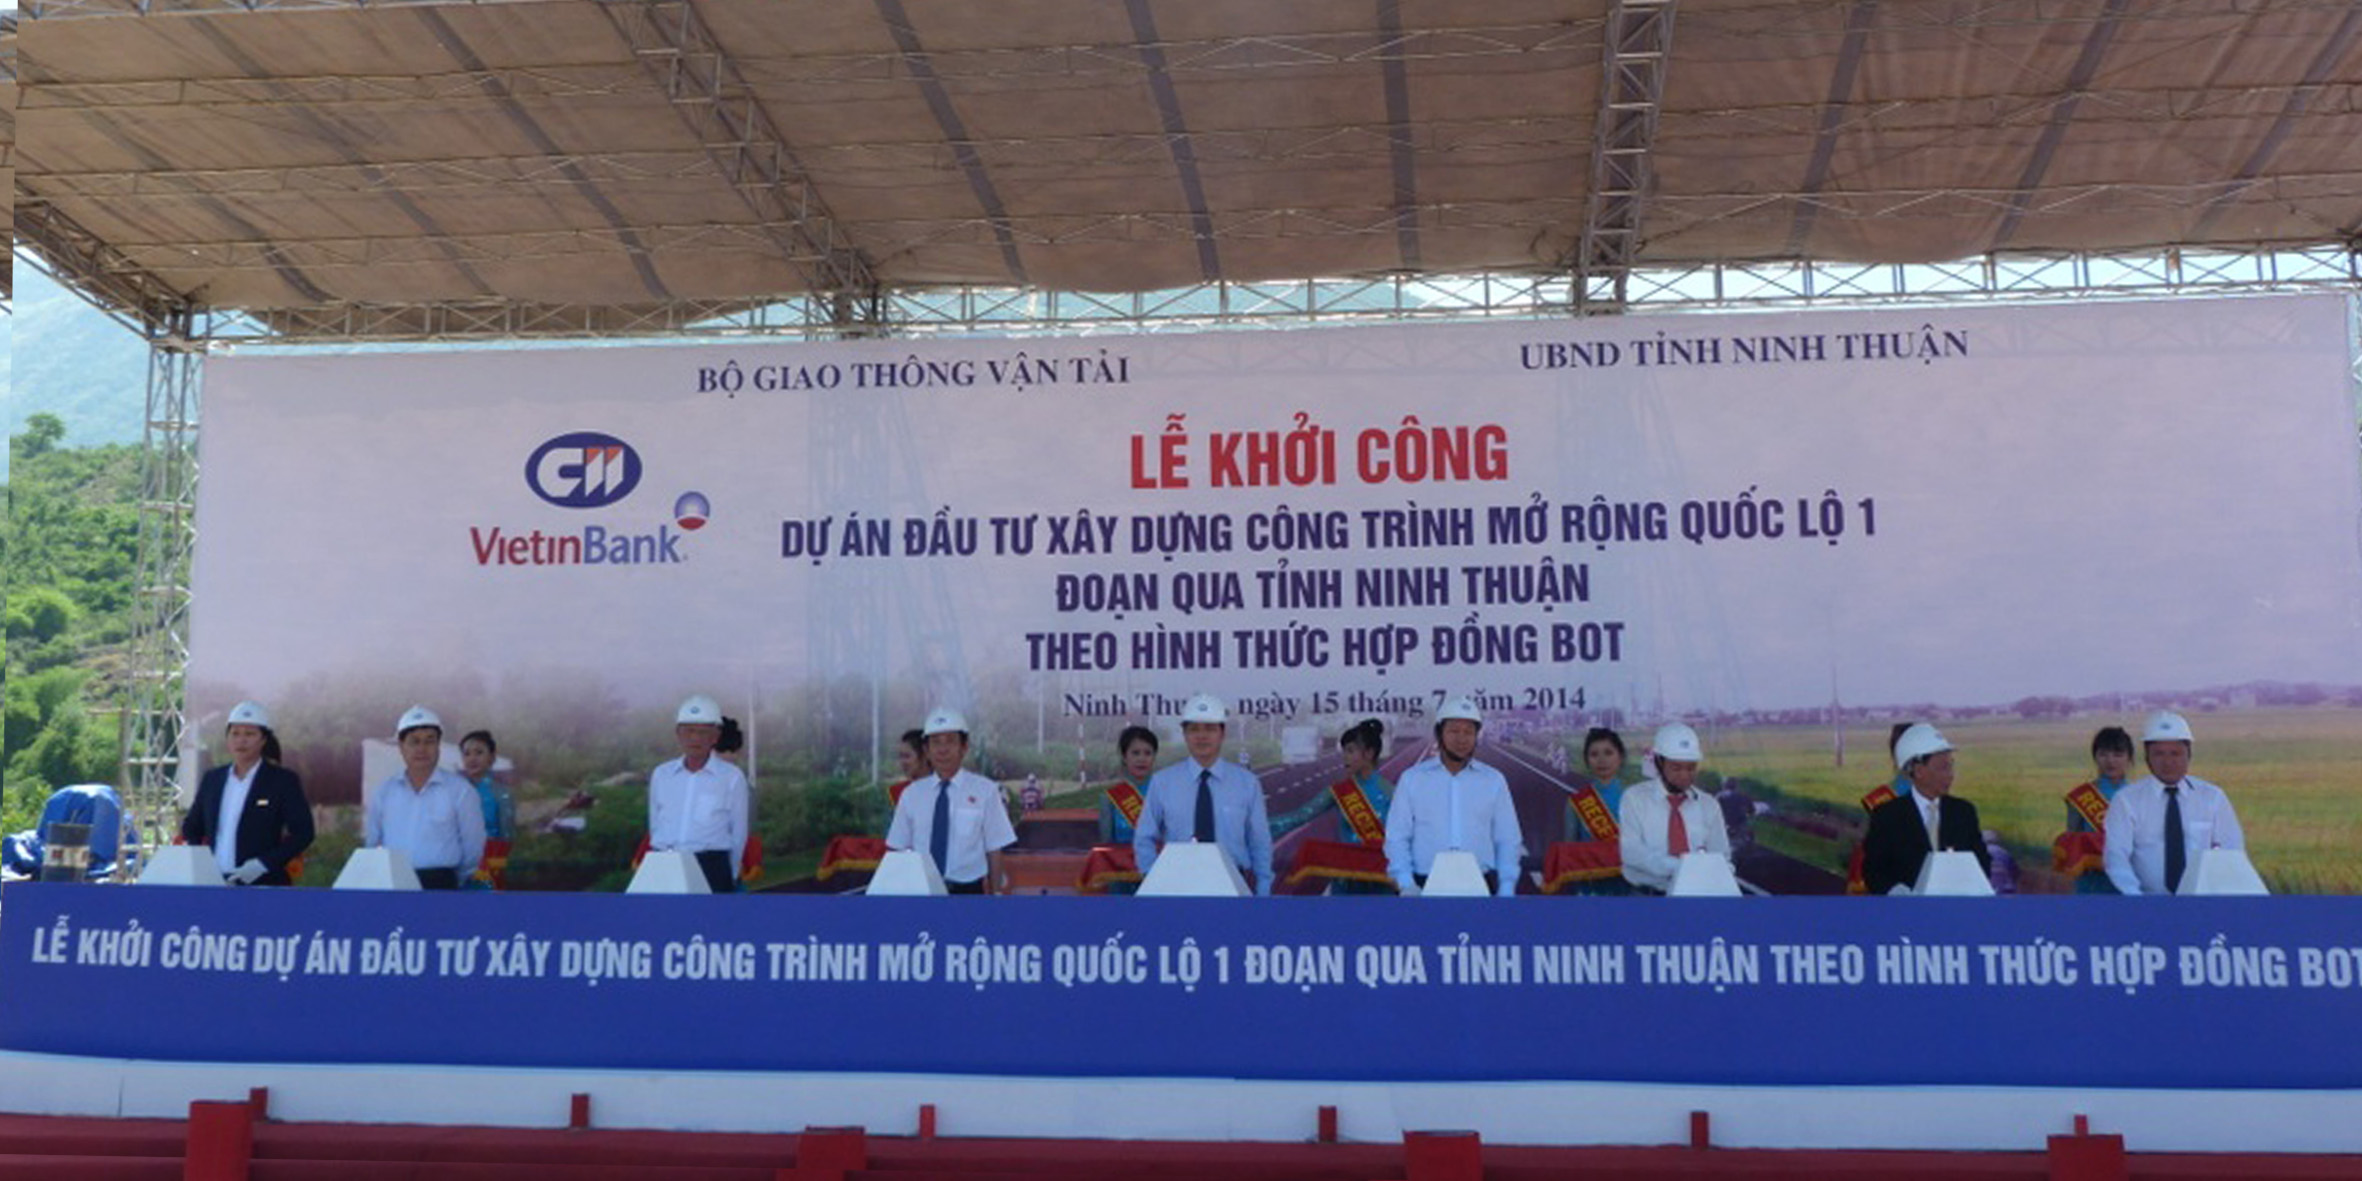 Dự án mở rộng Quốc lộ 1A Phan Rang - Ninh Thuận